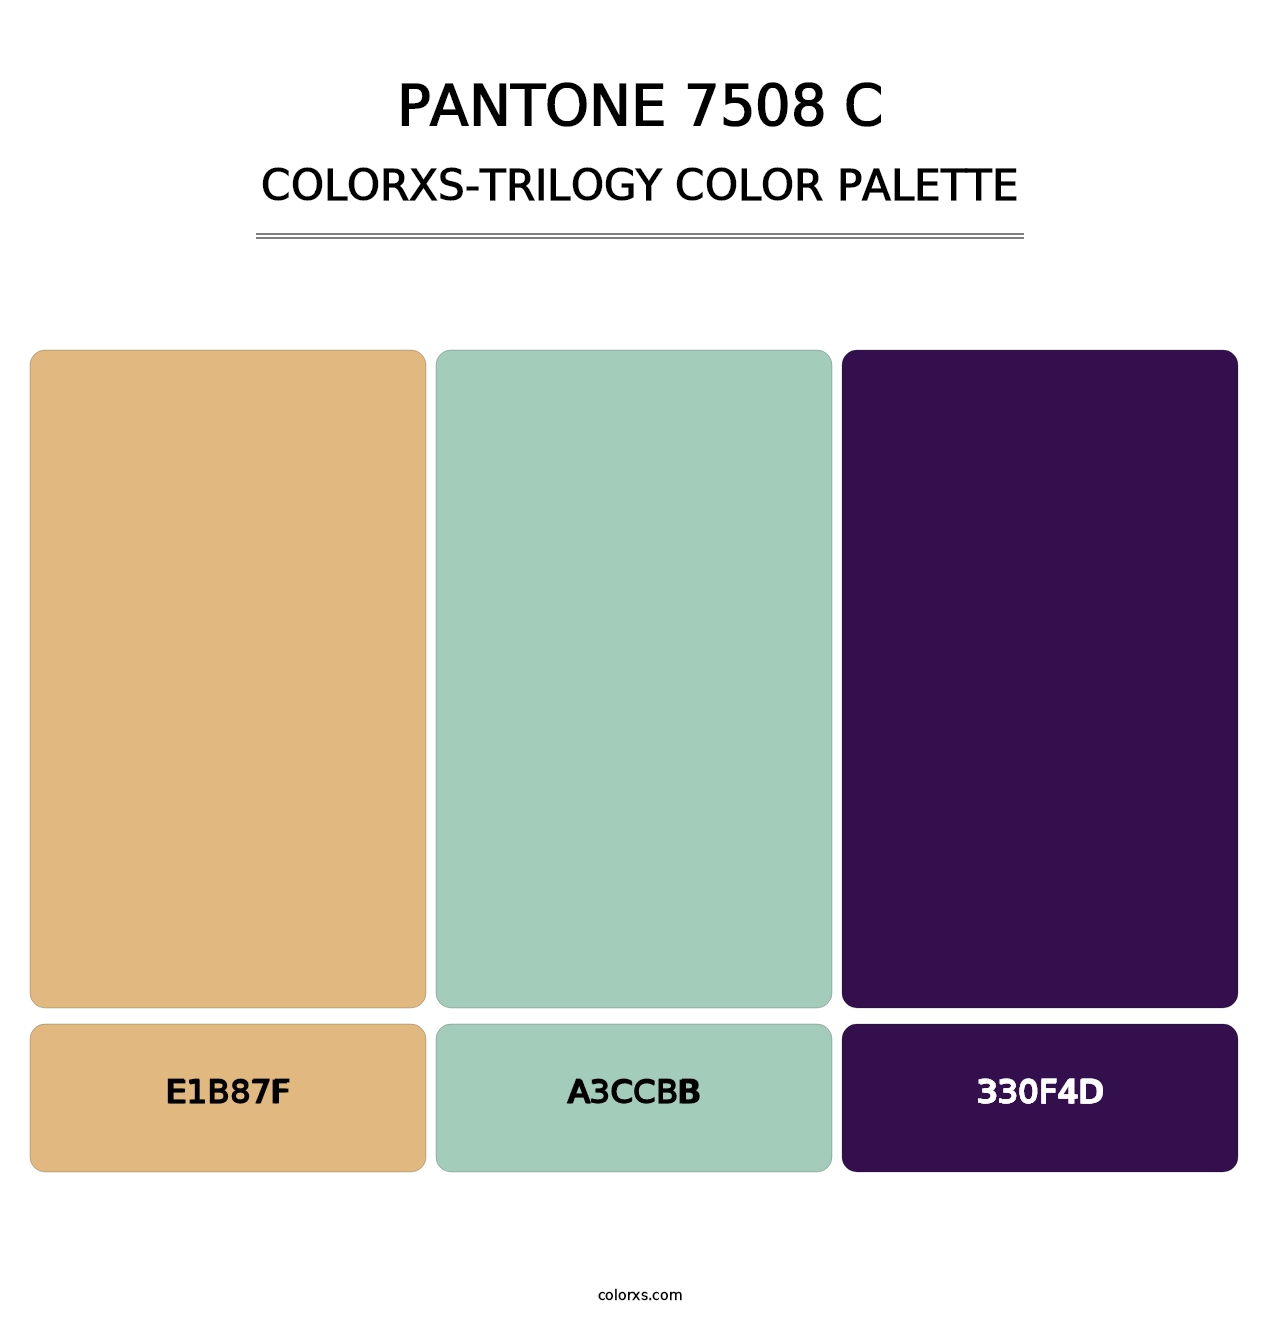 PANTONE 7508 C - Colorxs Trilogy Palette